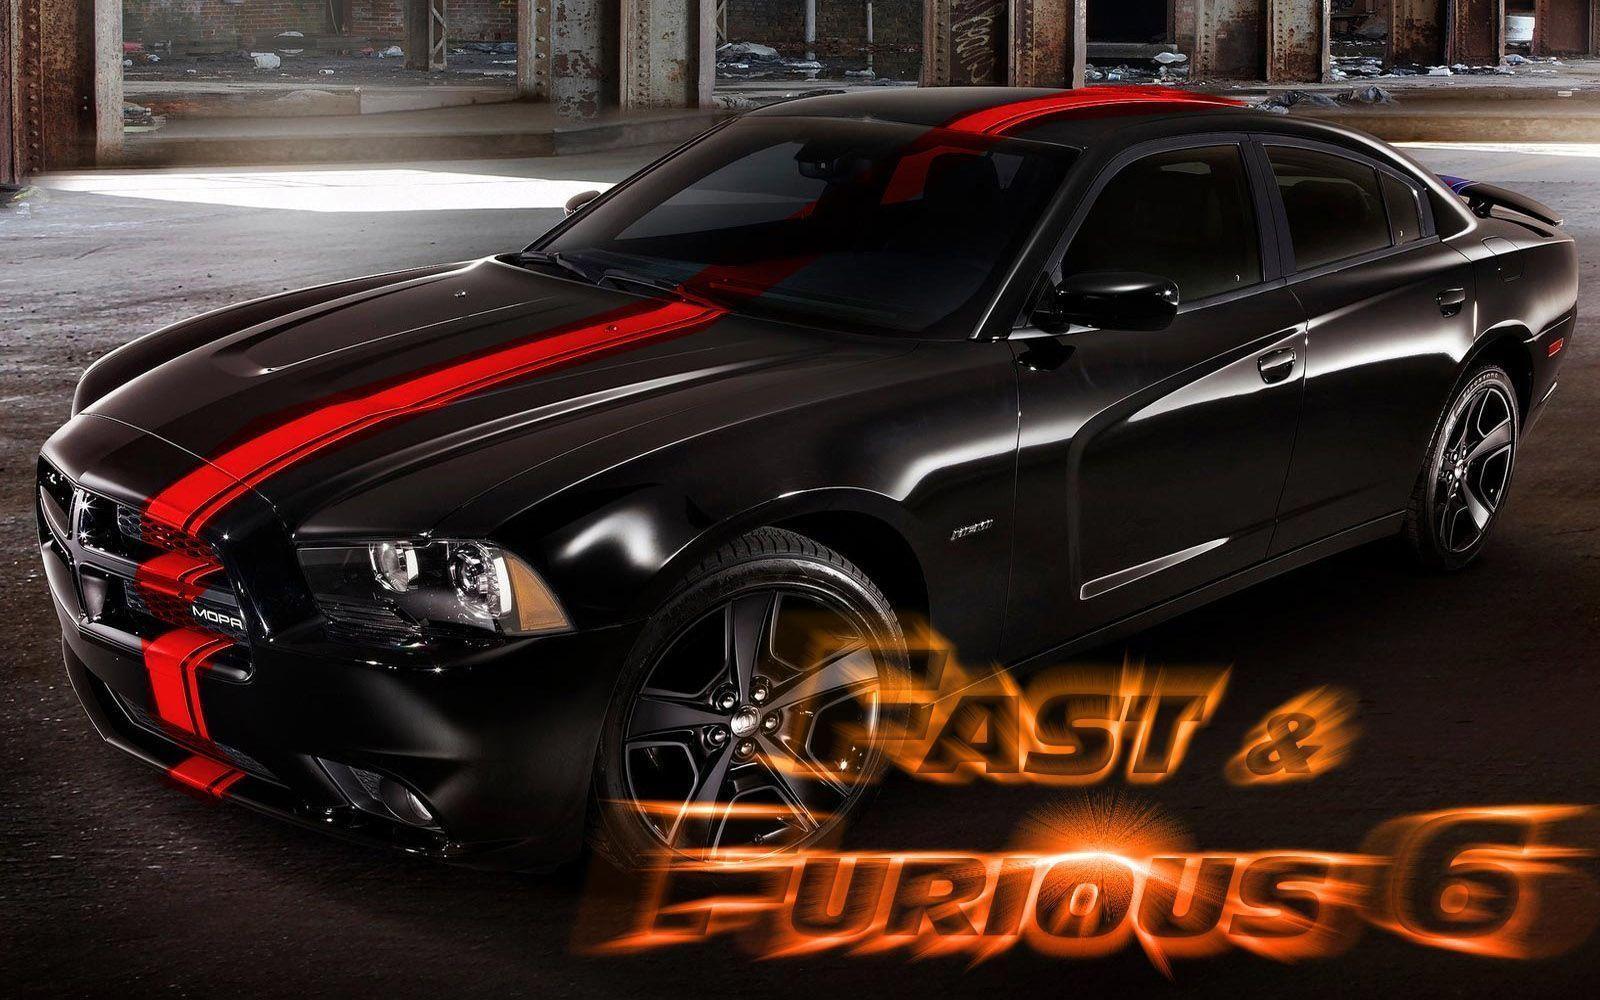 fast and furious 6 cars – Fast And Furious 6 Cars